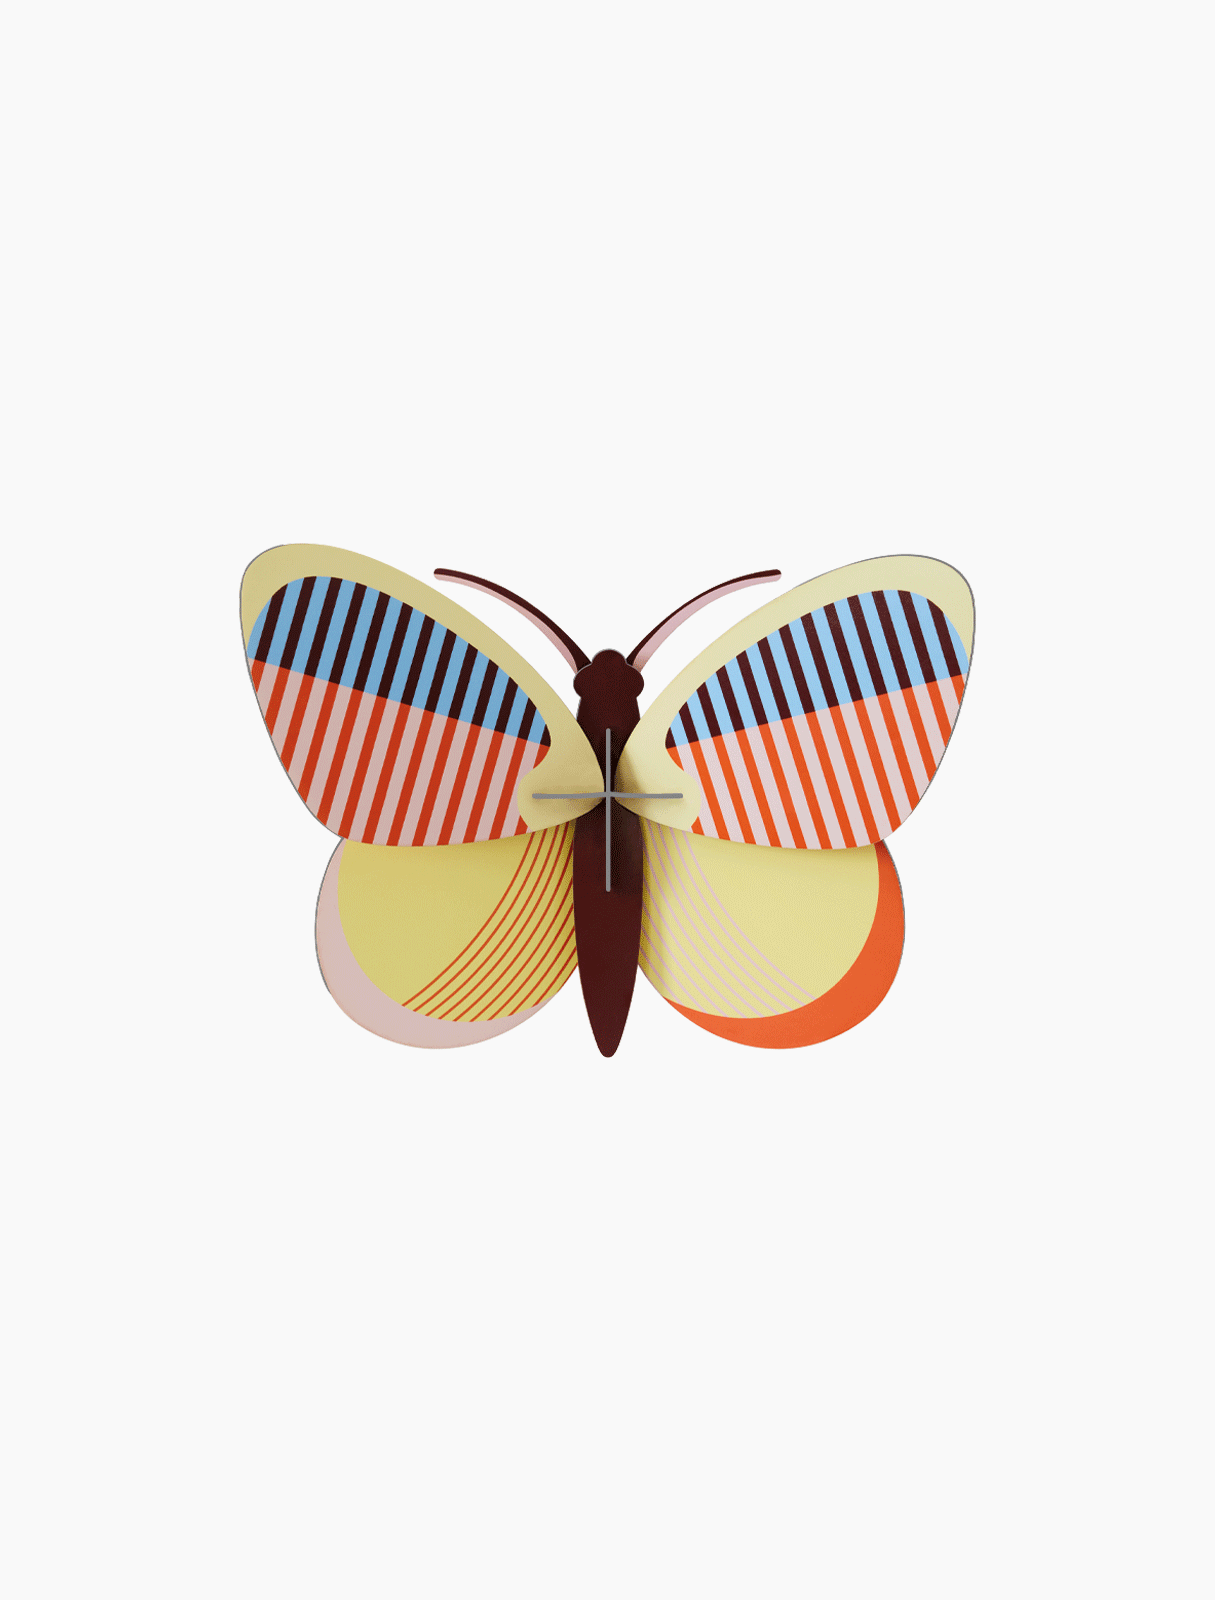 Sia Butterfly - 3D DIY Wall Art Kit